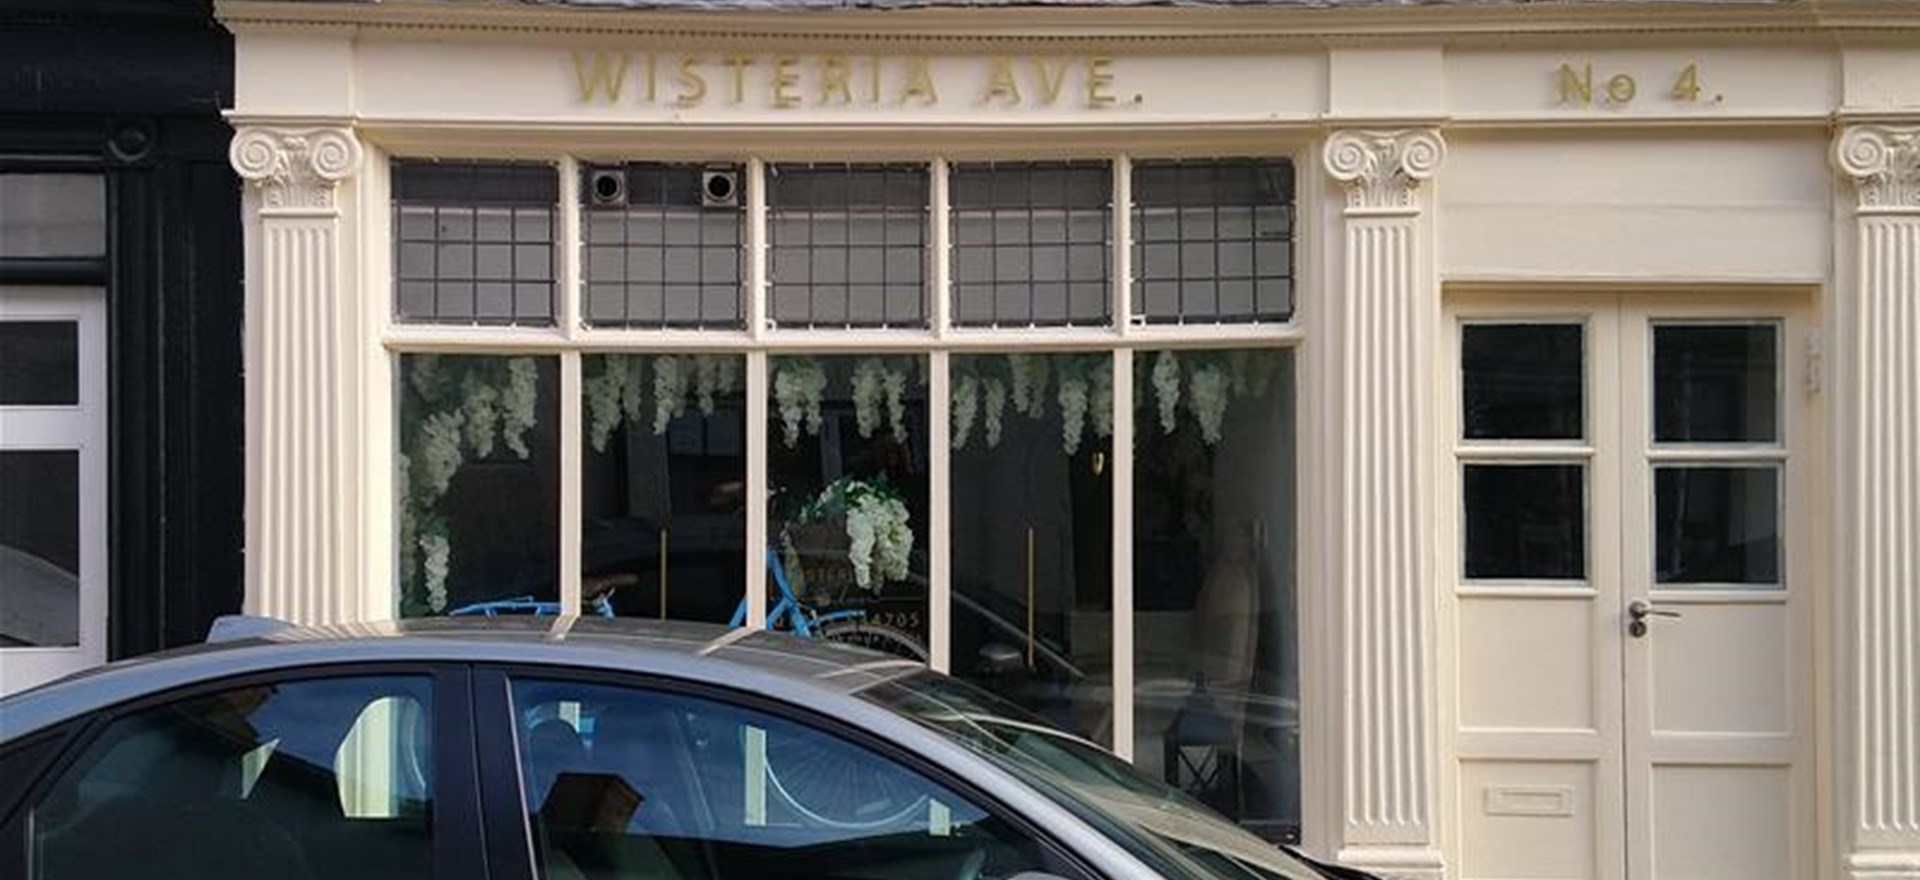 Wisteria Avenue Exterior Shop Signage Oxford